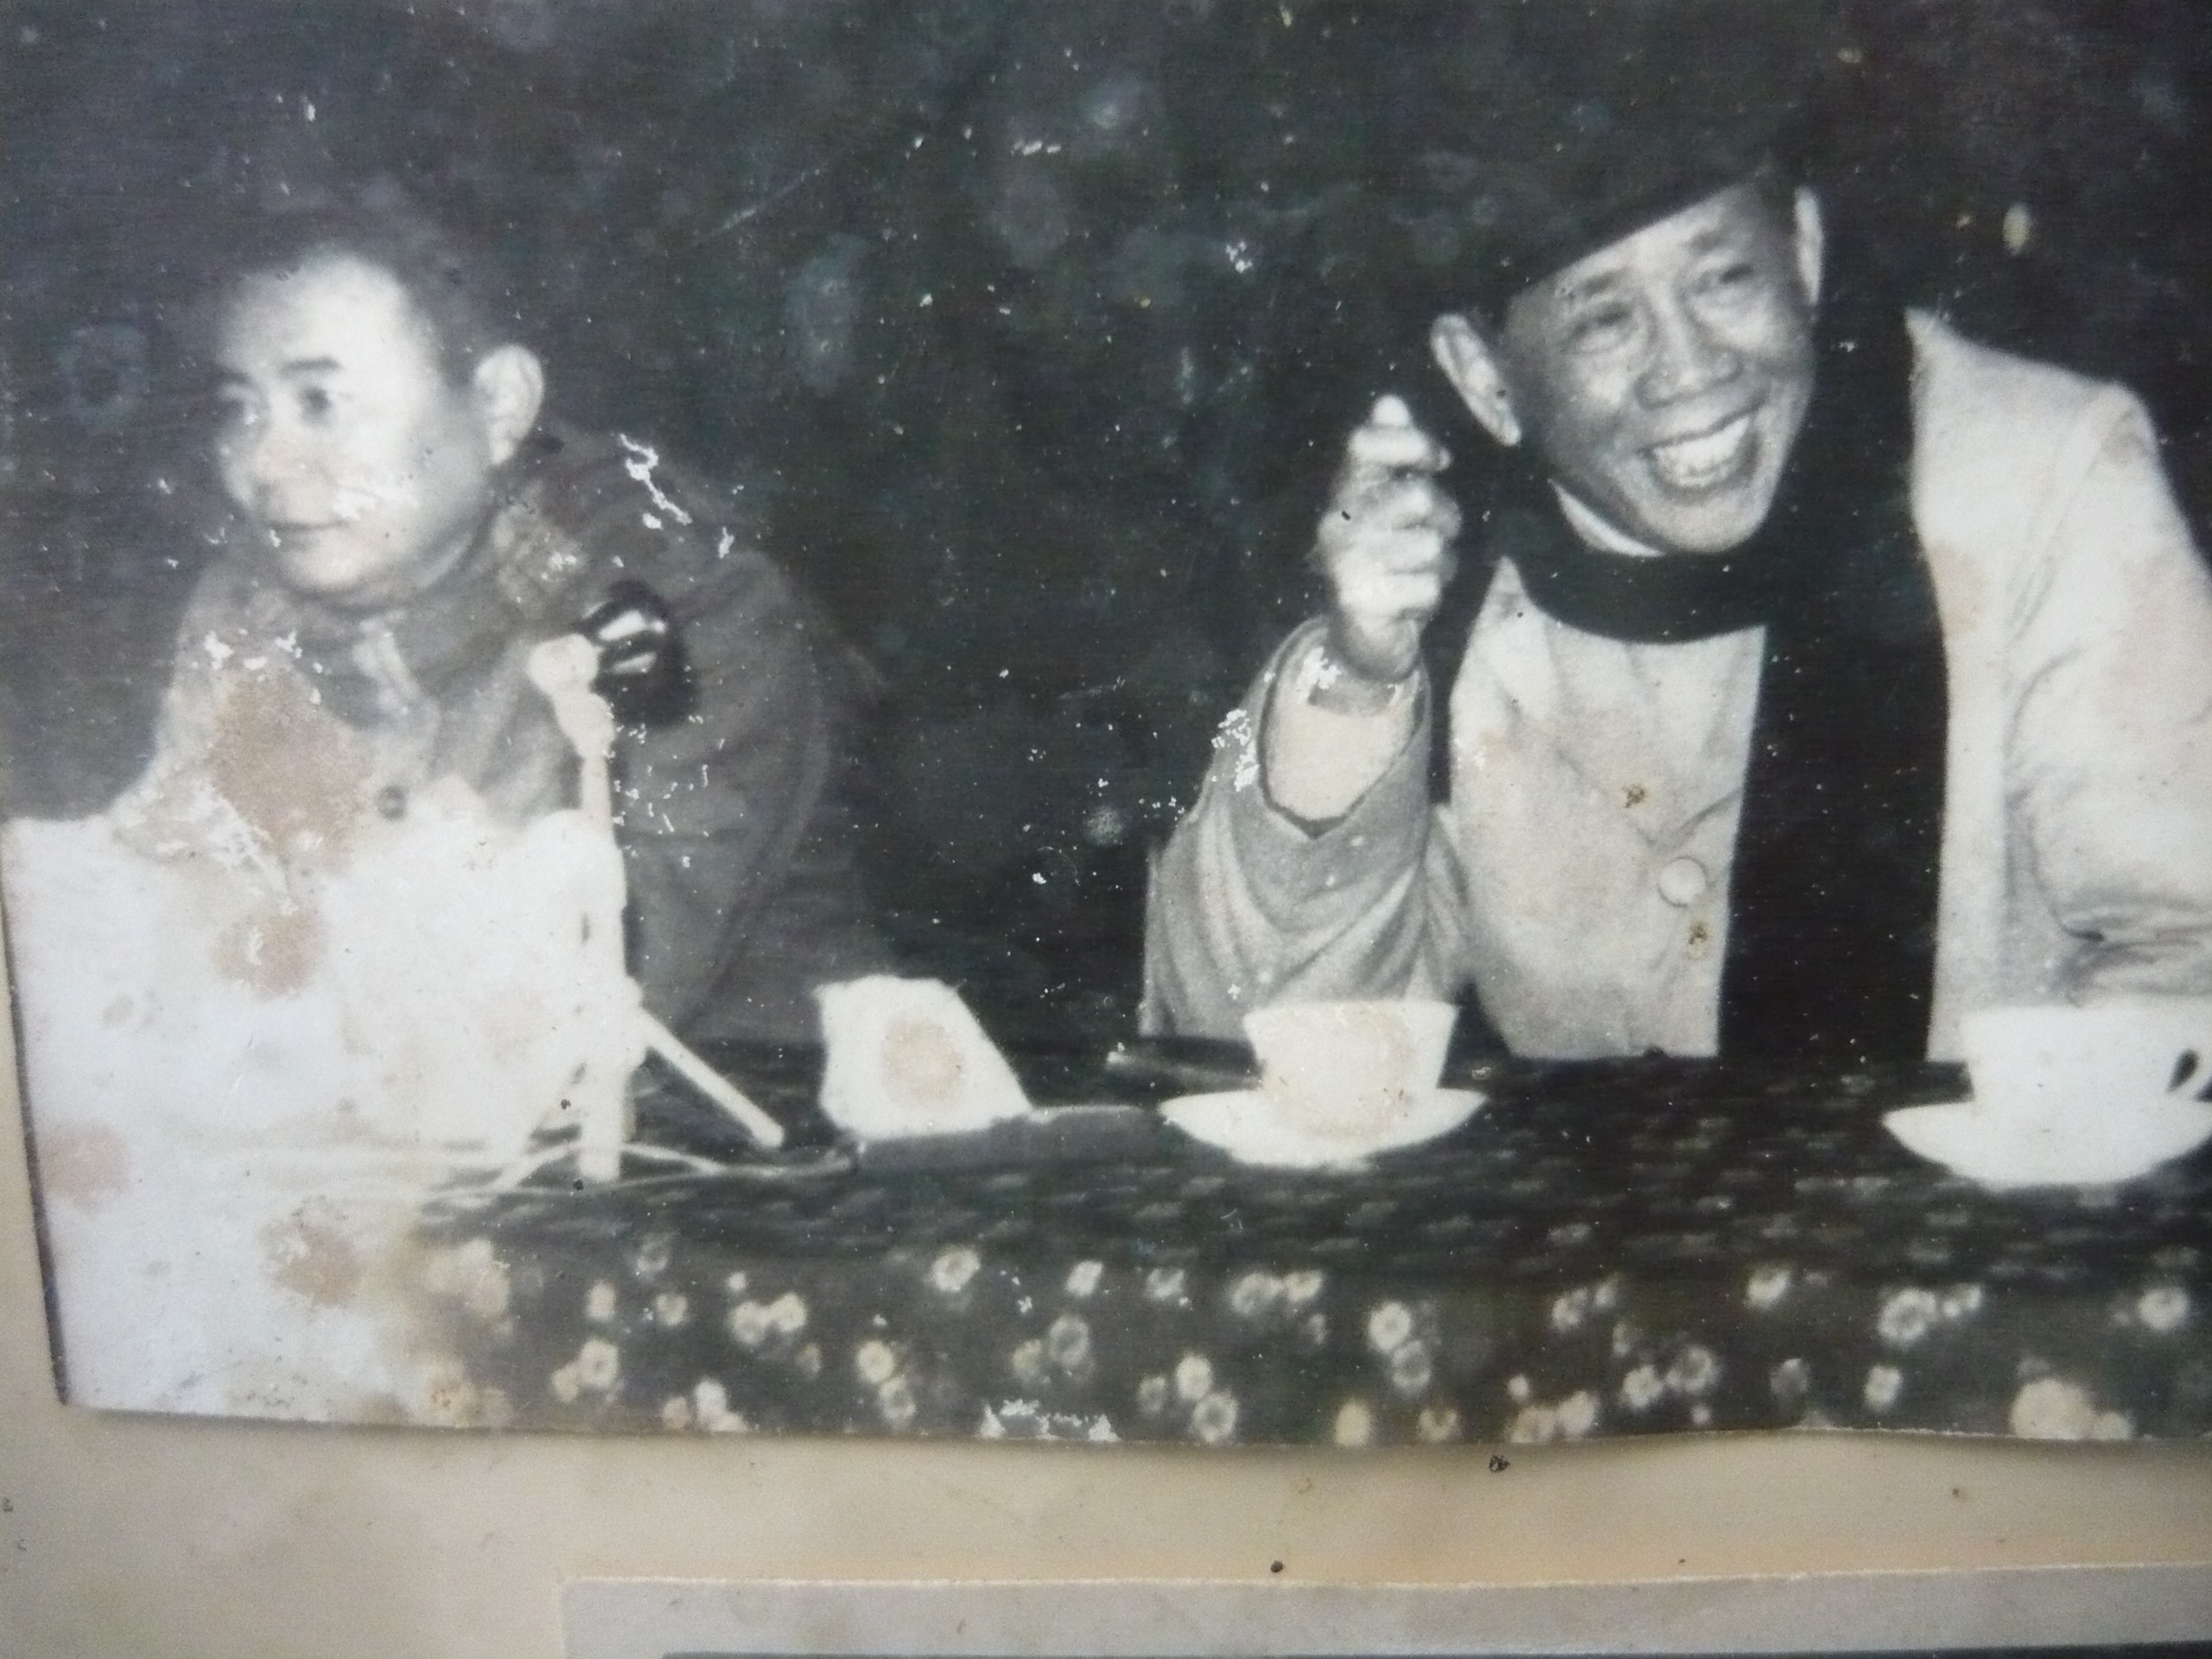 Đ/c Lê Duẩn, Tổng Bí thư Trung ương Đảng làm việc với đ/c Nguyễn Hữu Đợi, Bí thư Huyện ủy Quỳnh Lưu - năm 1976.